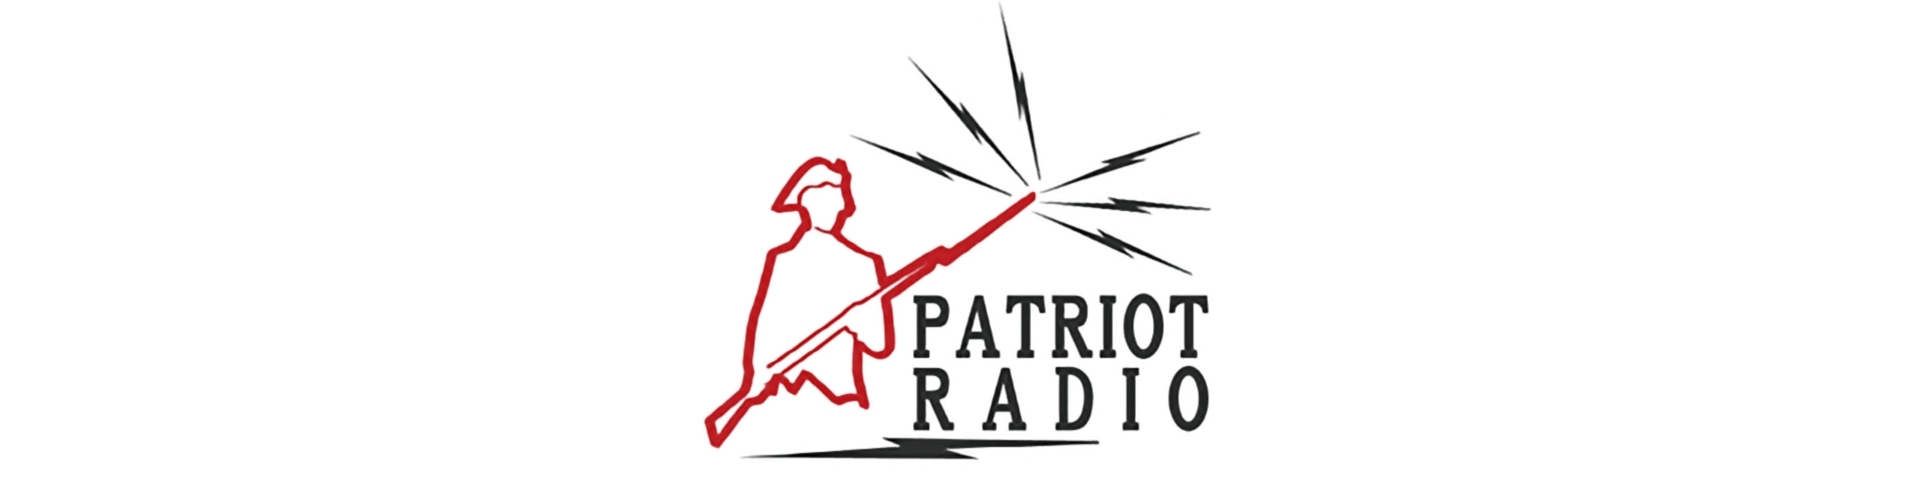 PATRIOT RADIO - MATT SHEA